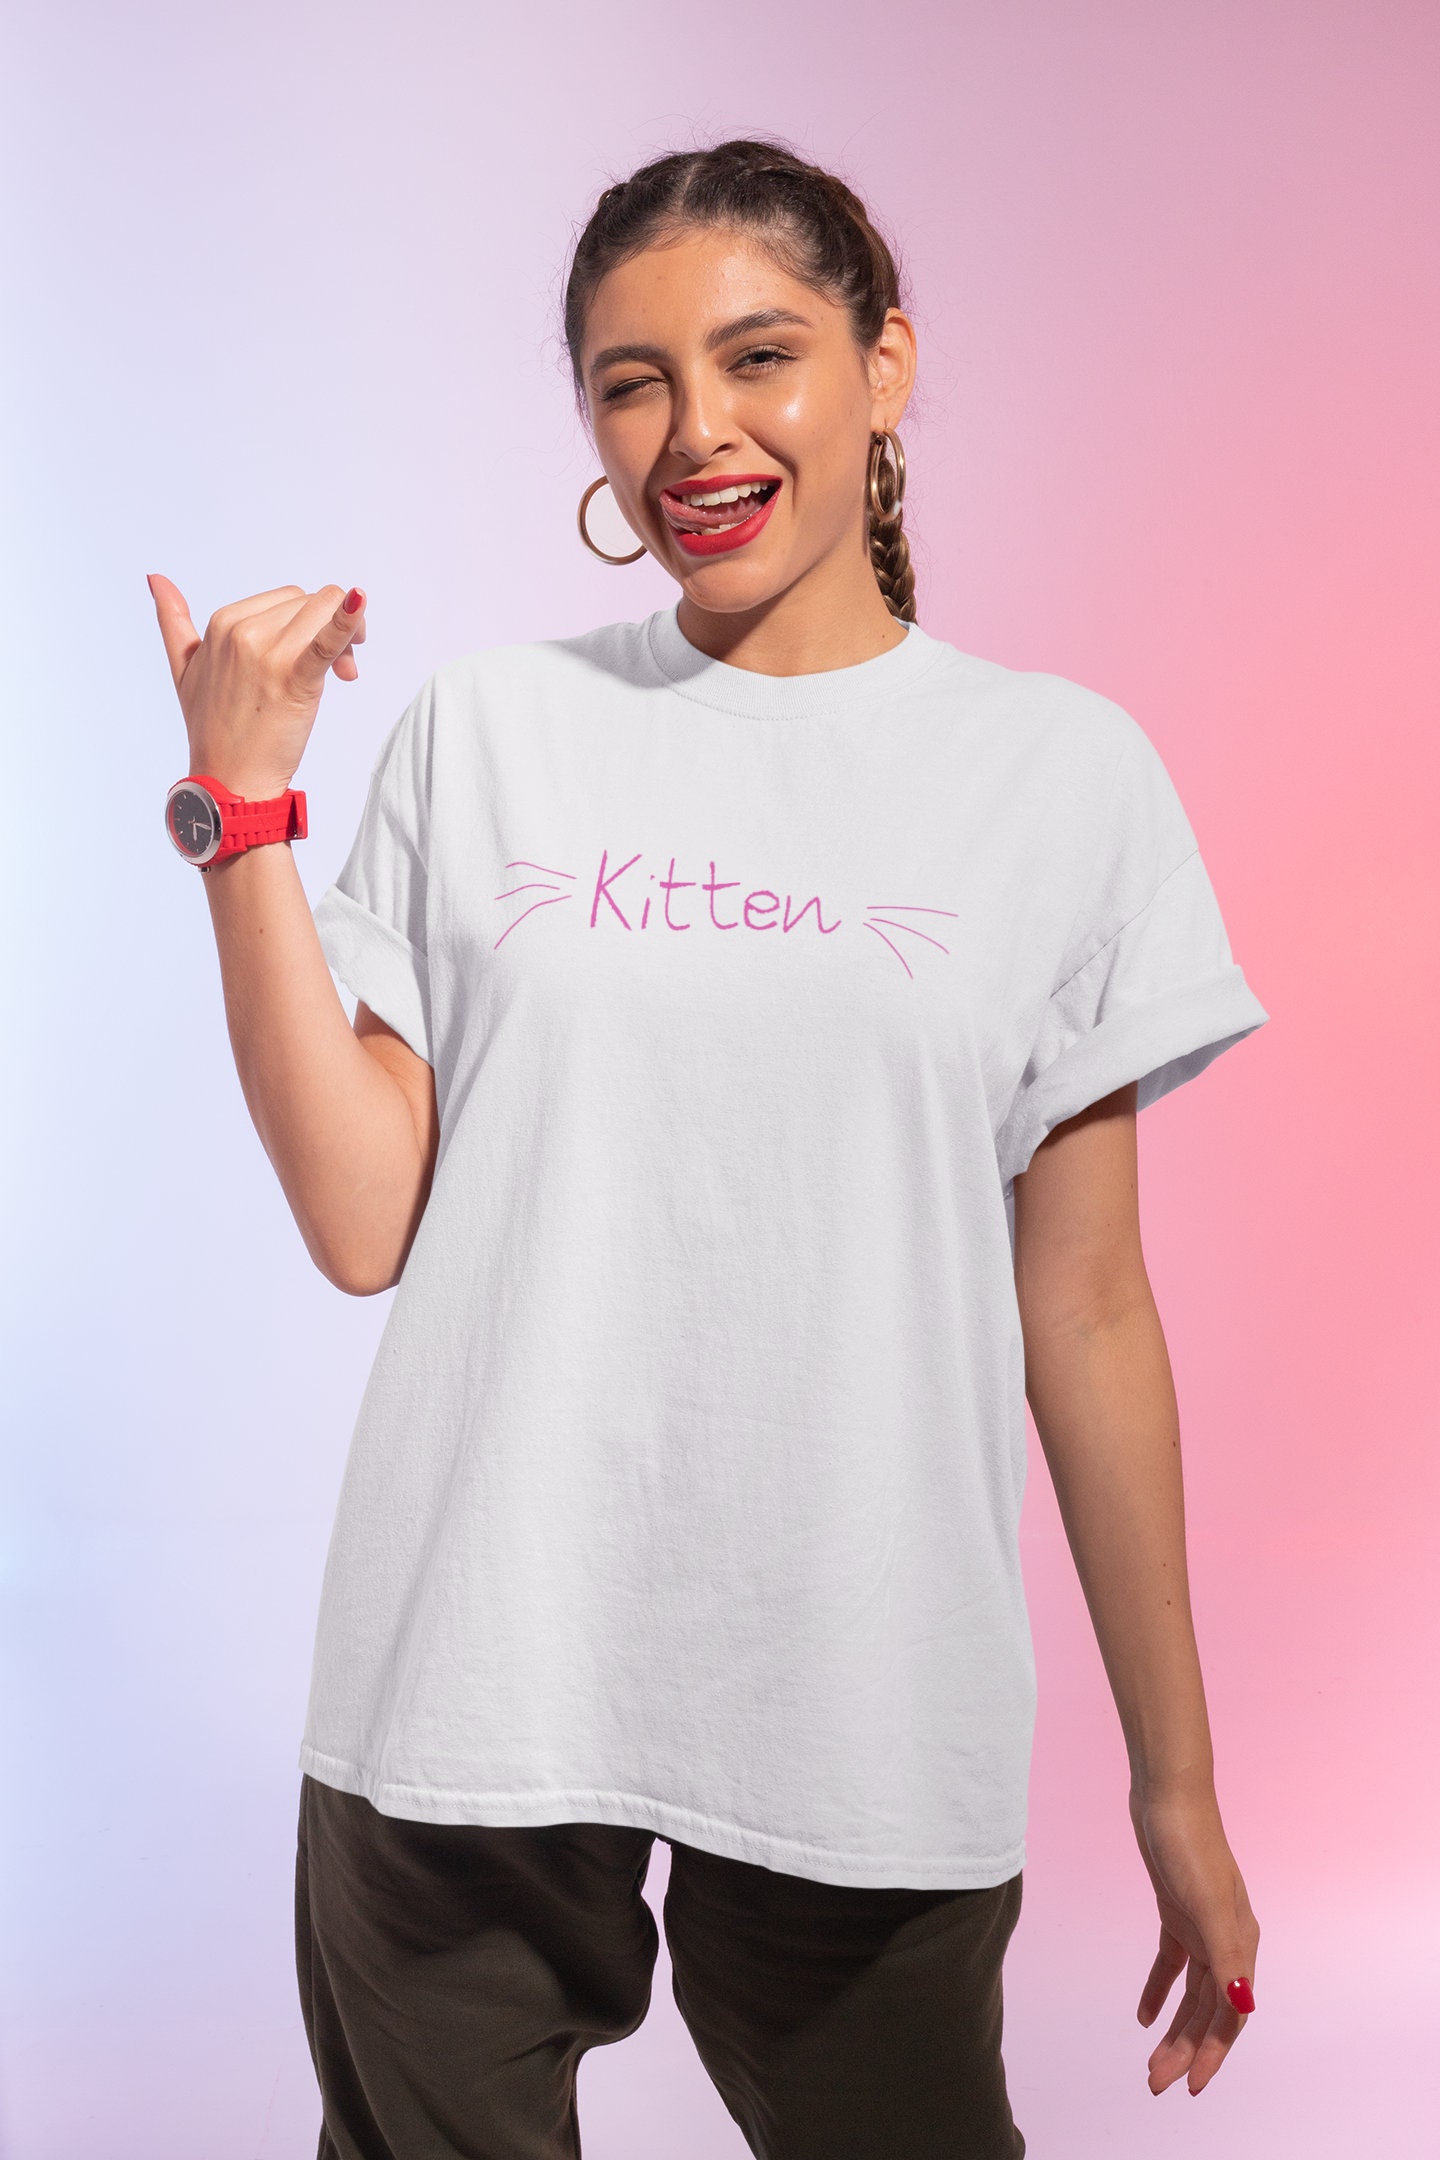 Kitten White Cat T-Shirt | Etsy